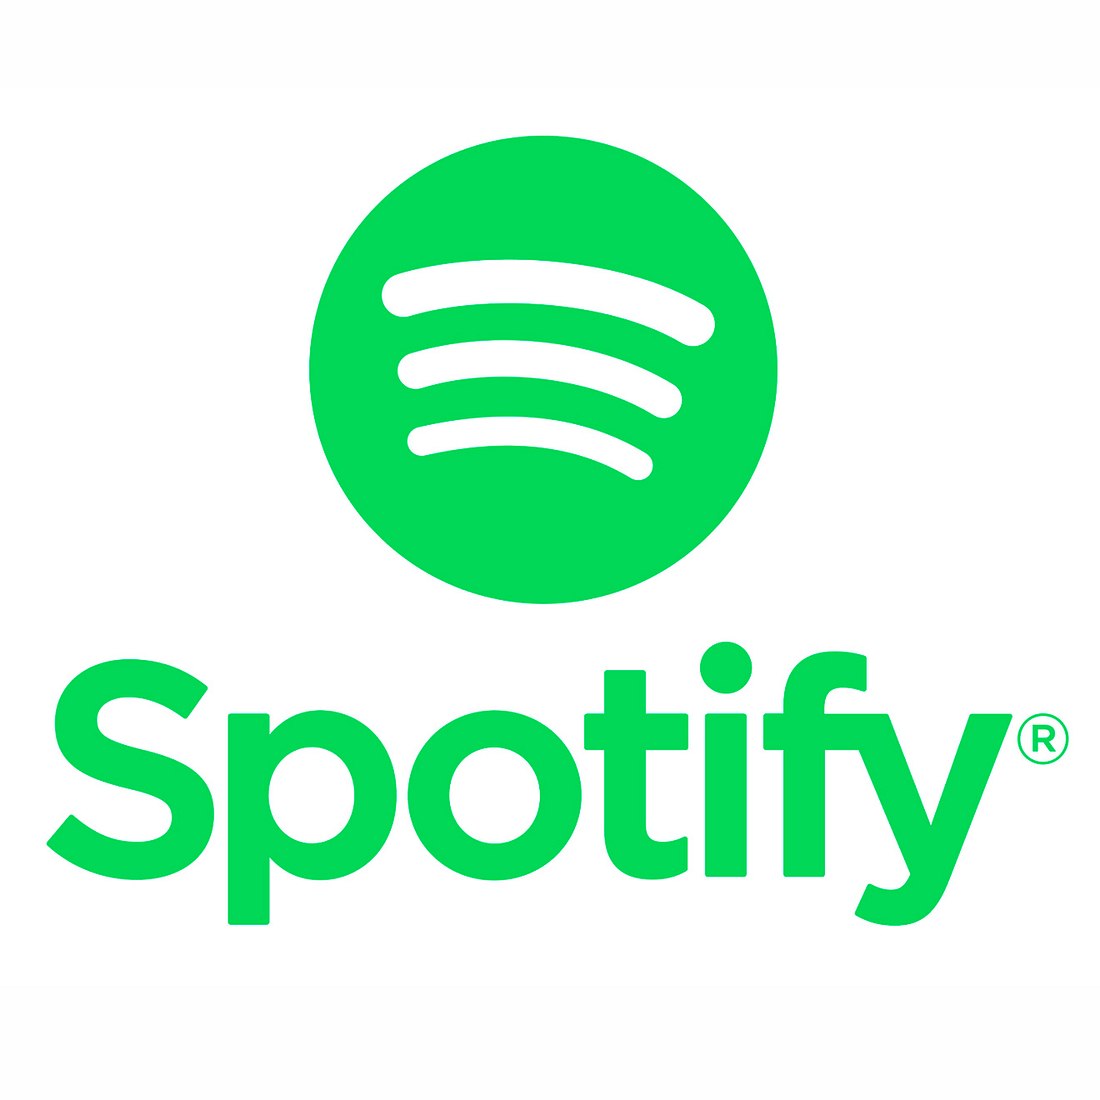 Spotify ist der weltweit größte Musik-Streaming-Dienst.